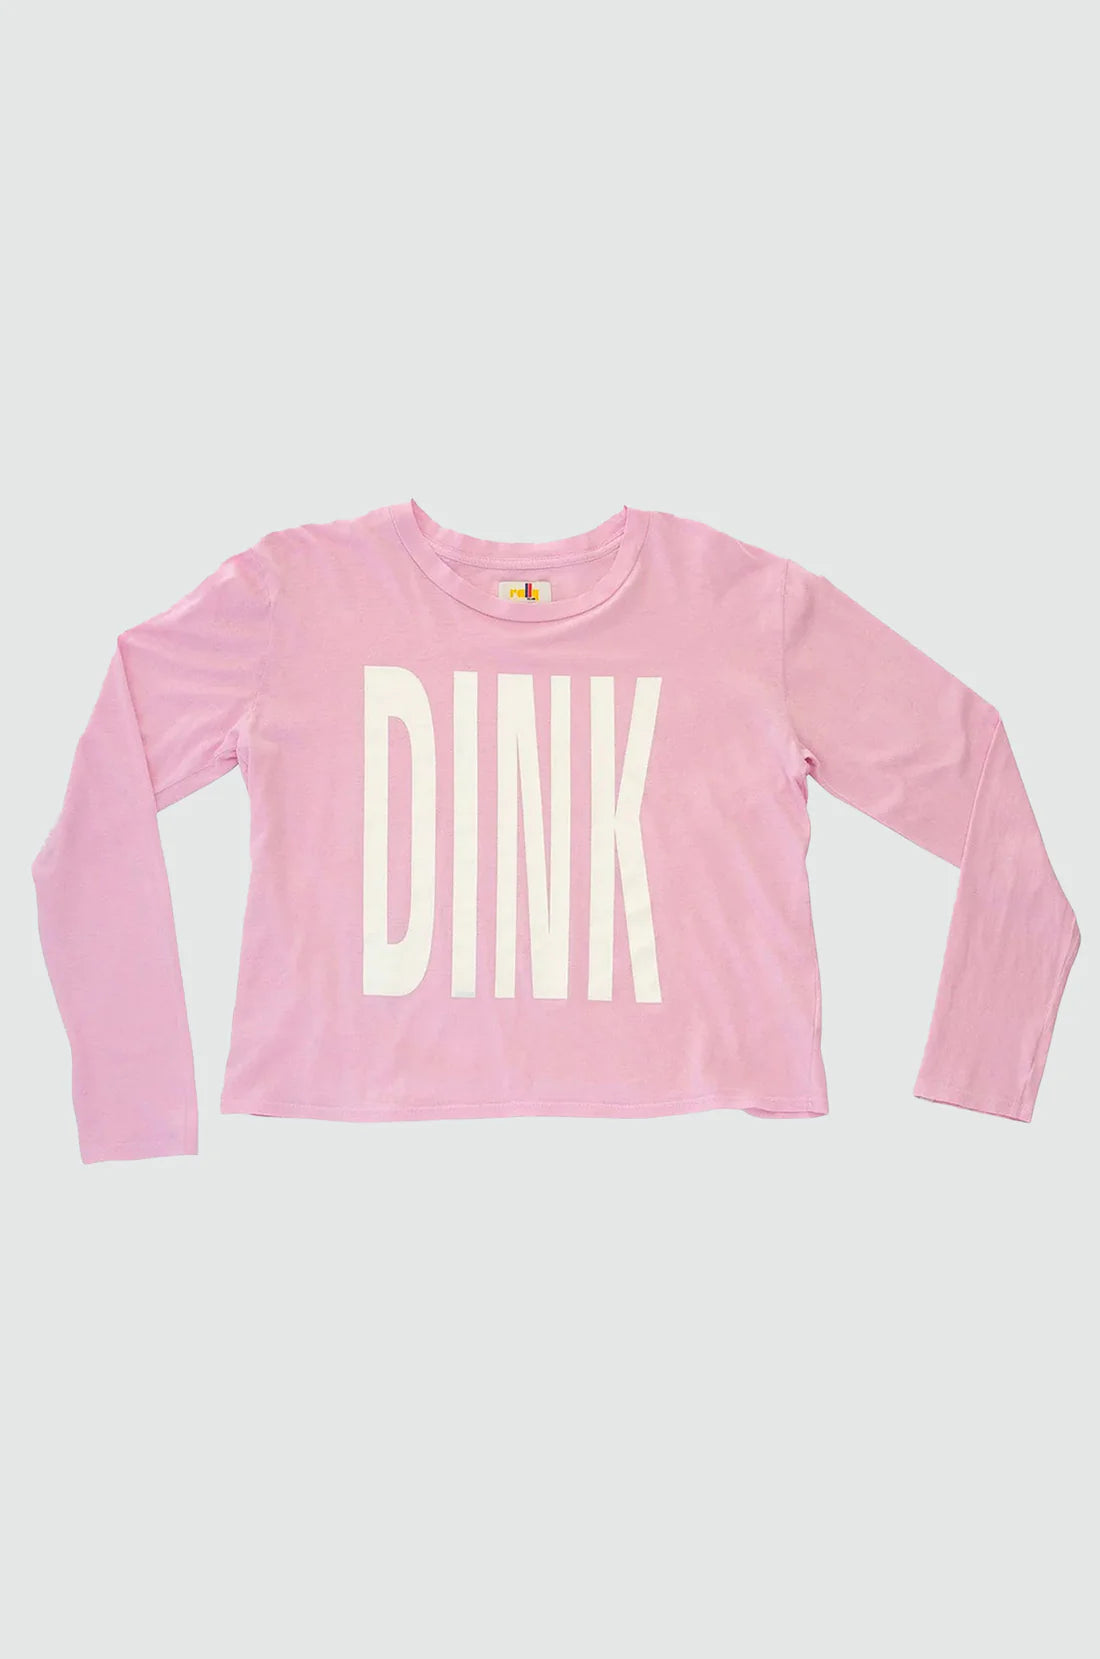 "Dink" T-Shirt